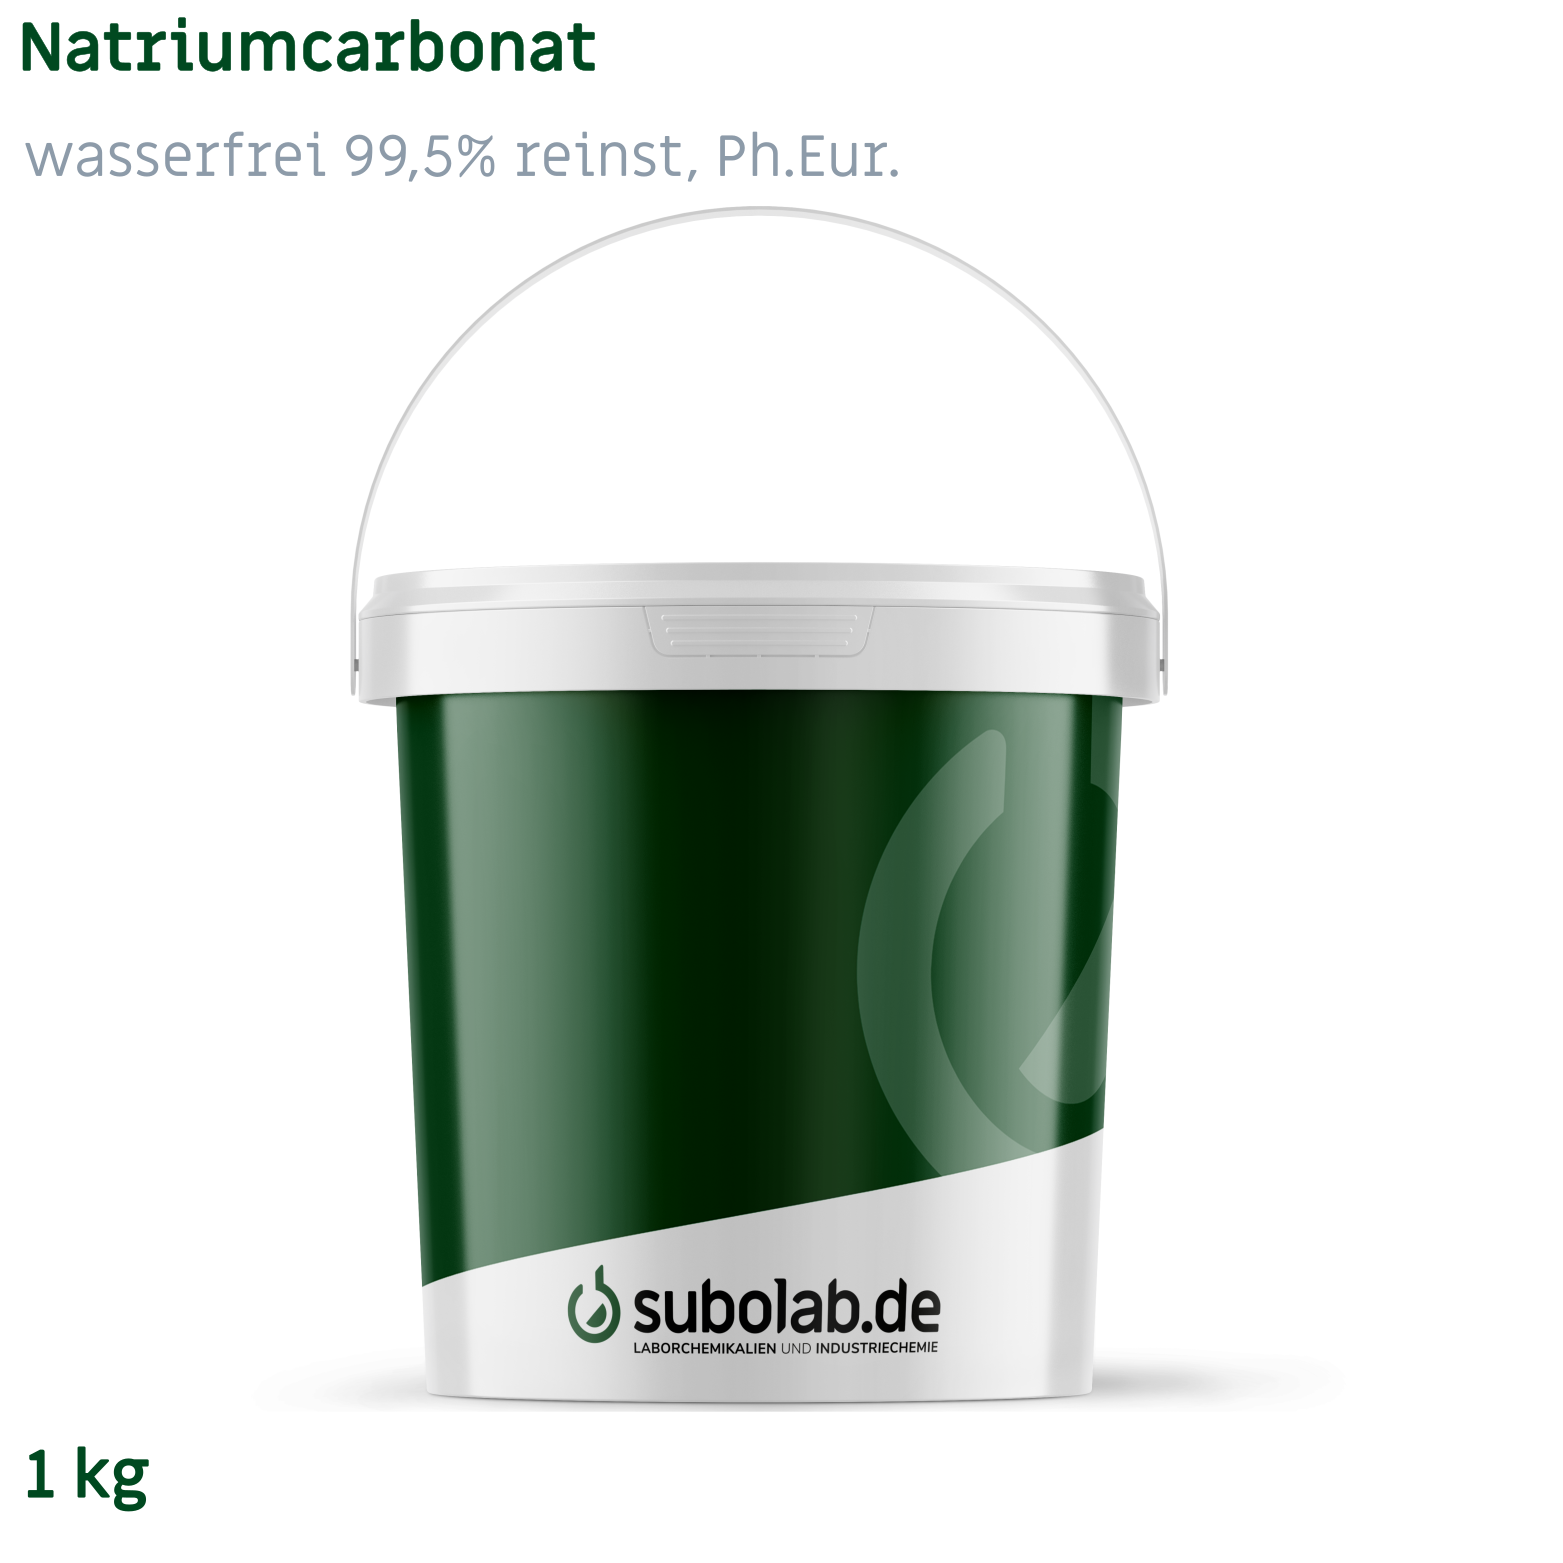 Bild von Natriumcarbonat - wasserfrei 99,5% reinst, Ph.Eur. (1 kg)